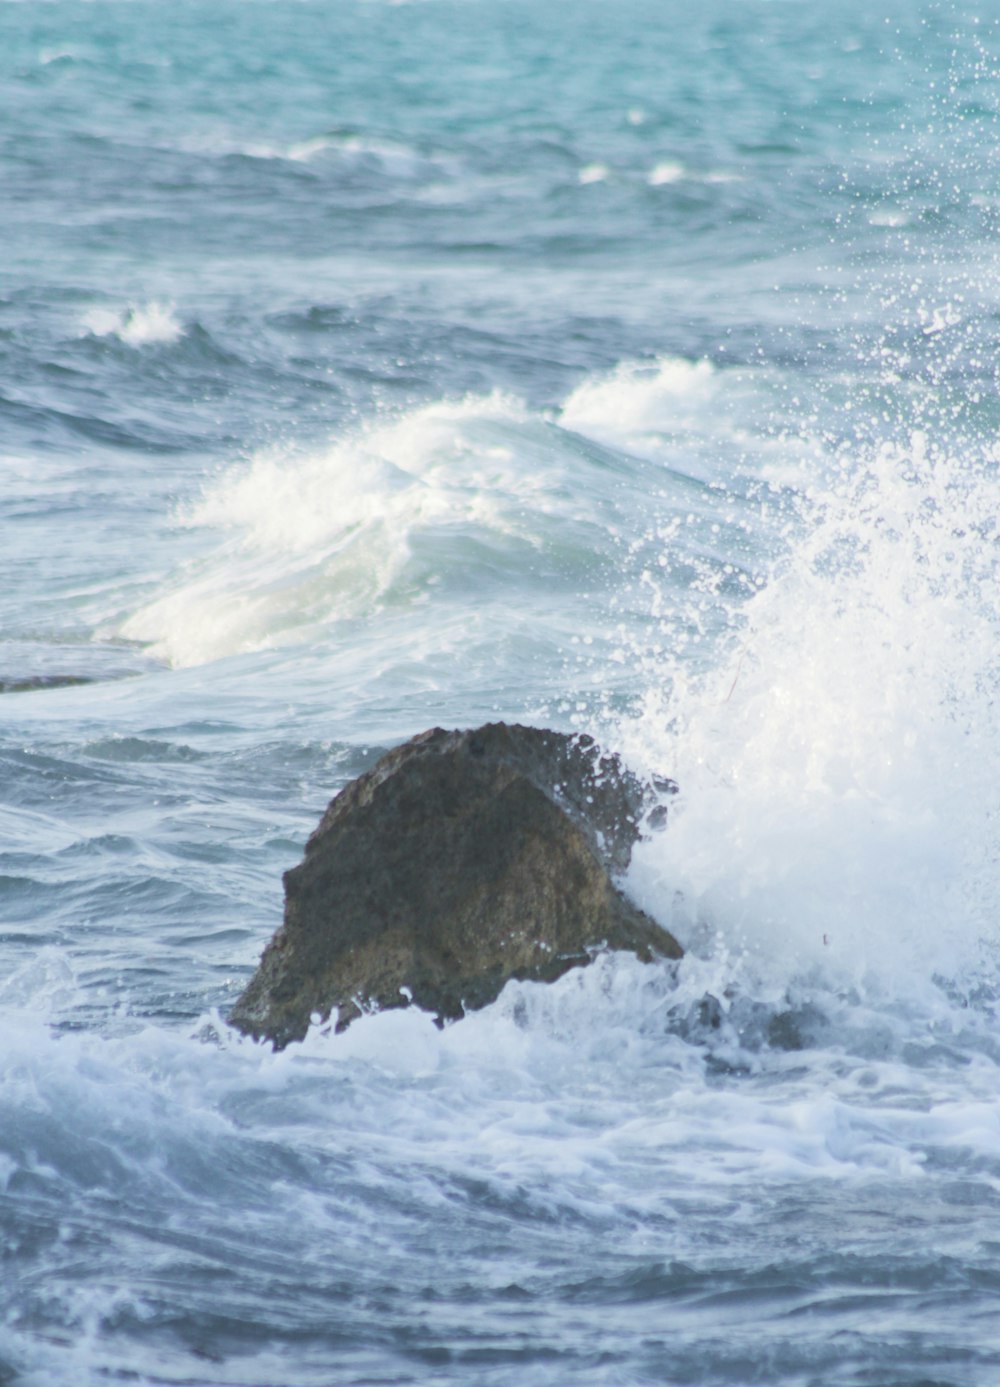 ocean waves crashing on brown rock formation during daytime